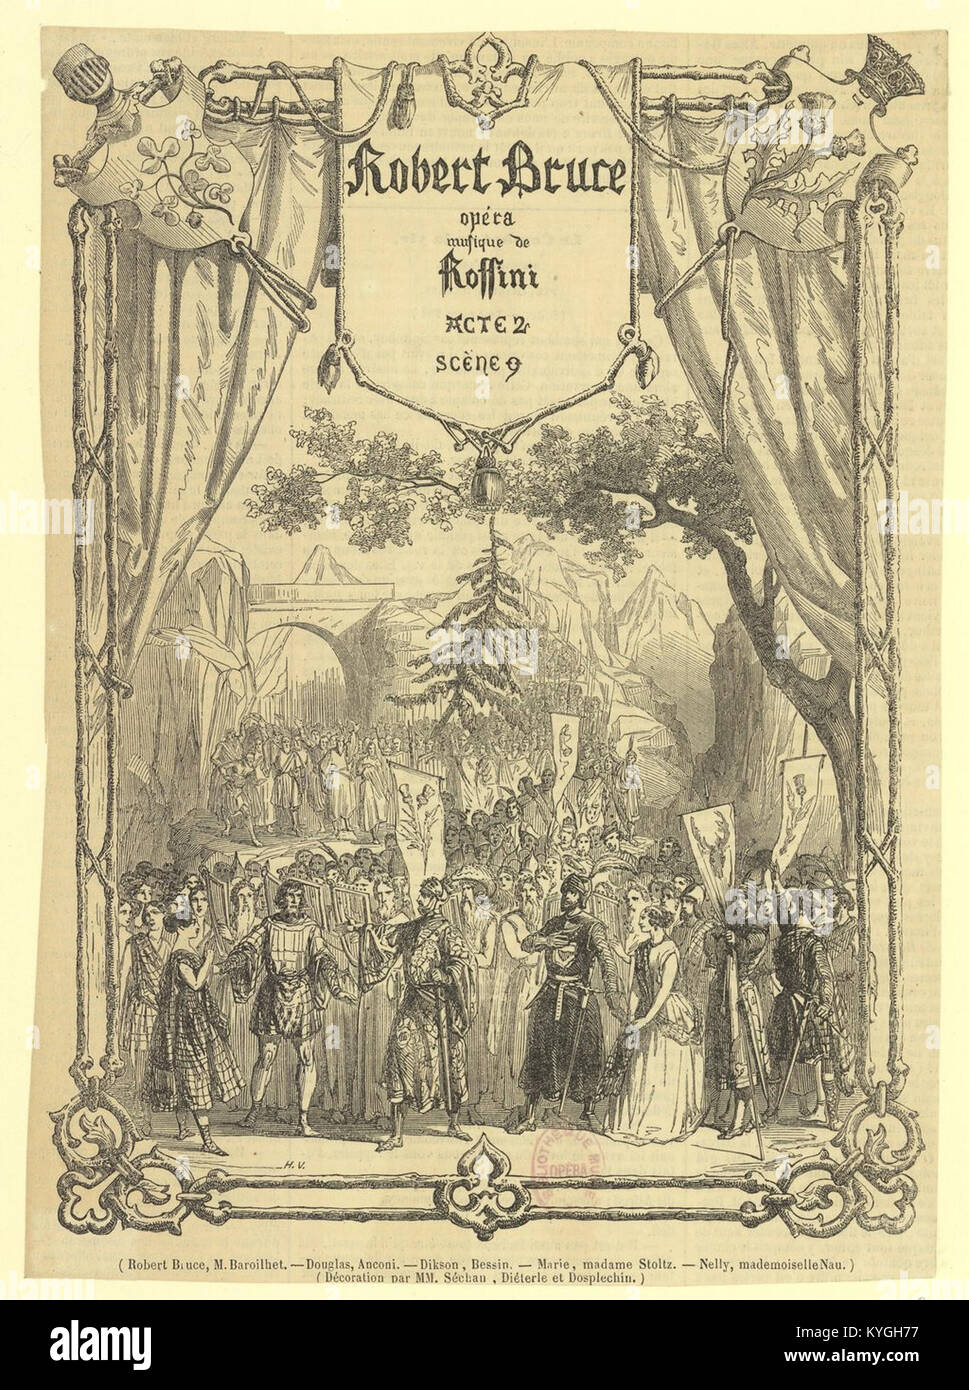 Rossini - Robert Bruce - Paris 1846 - acte 2, scène 9 - H.V Stock Photo